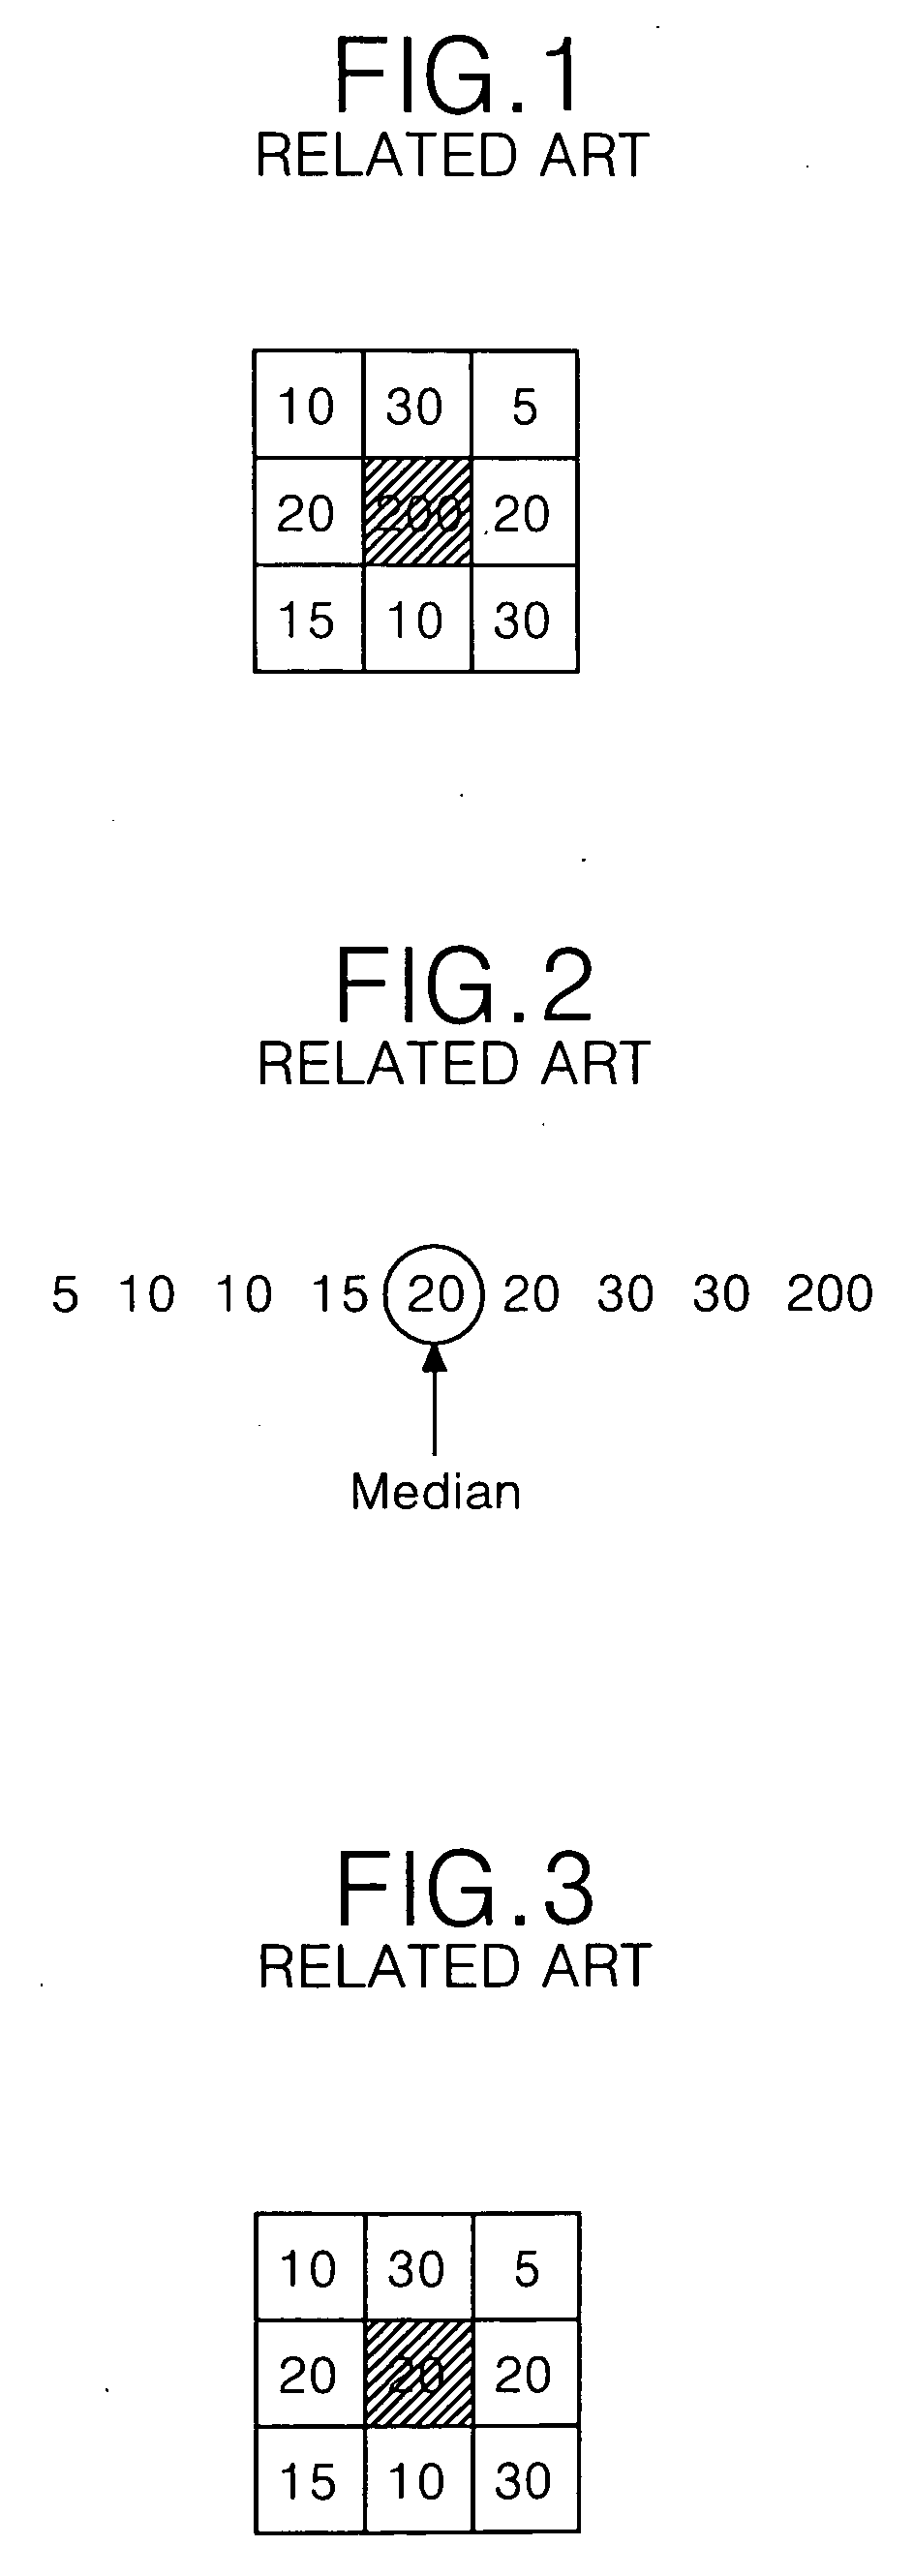 Method of median filtering